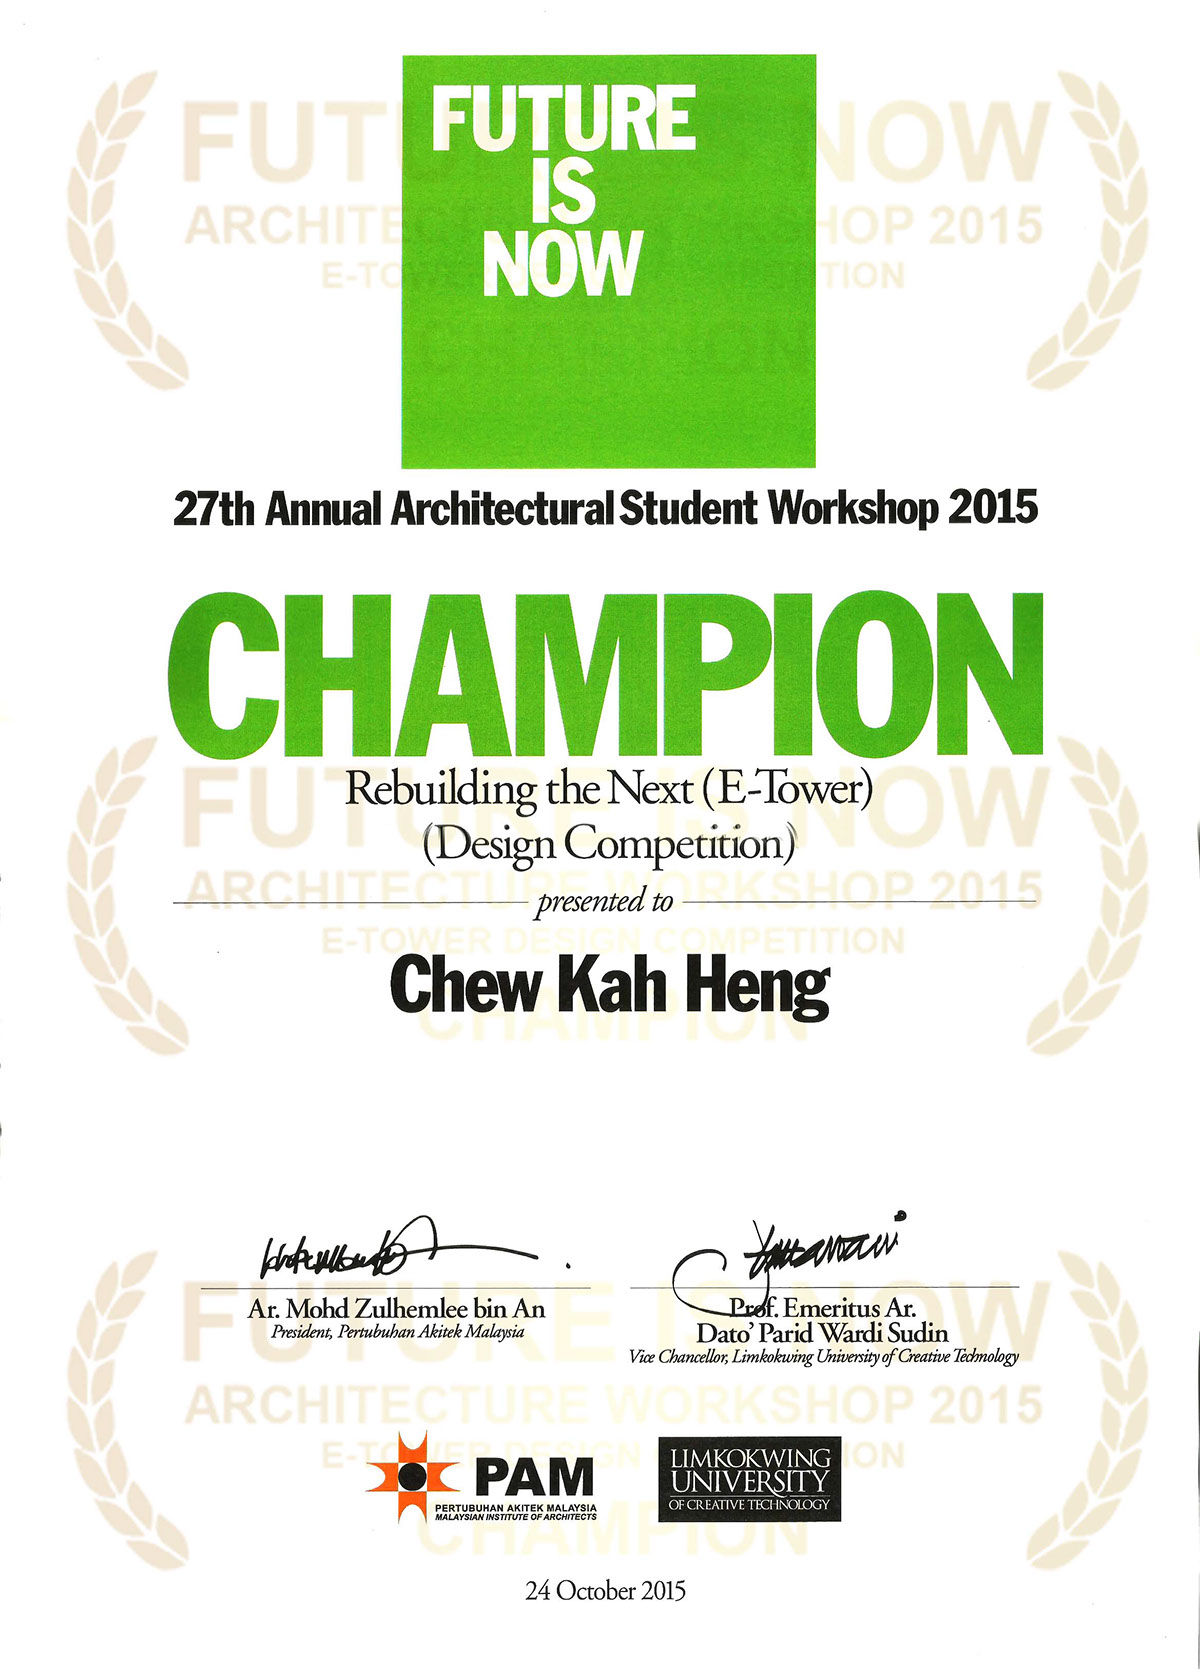 FUTUREISNOW2015 ARCHITECTUREWORKSHOP ETOWER design Competition